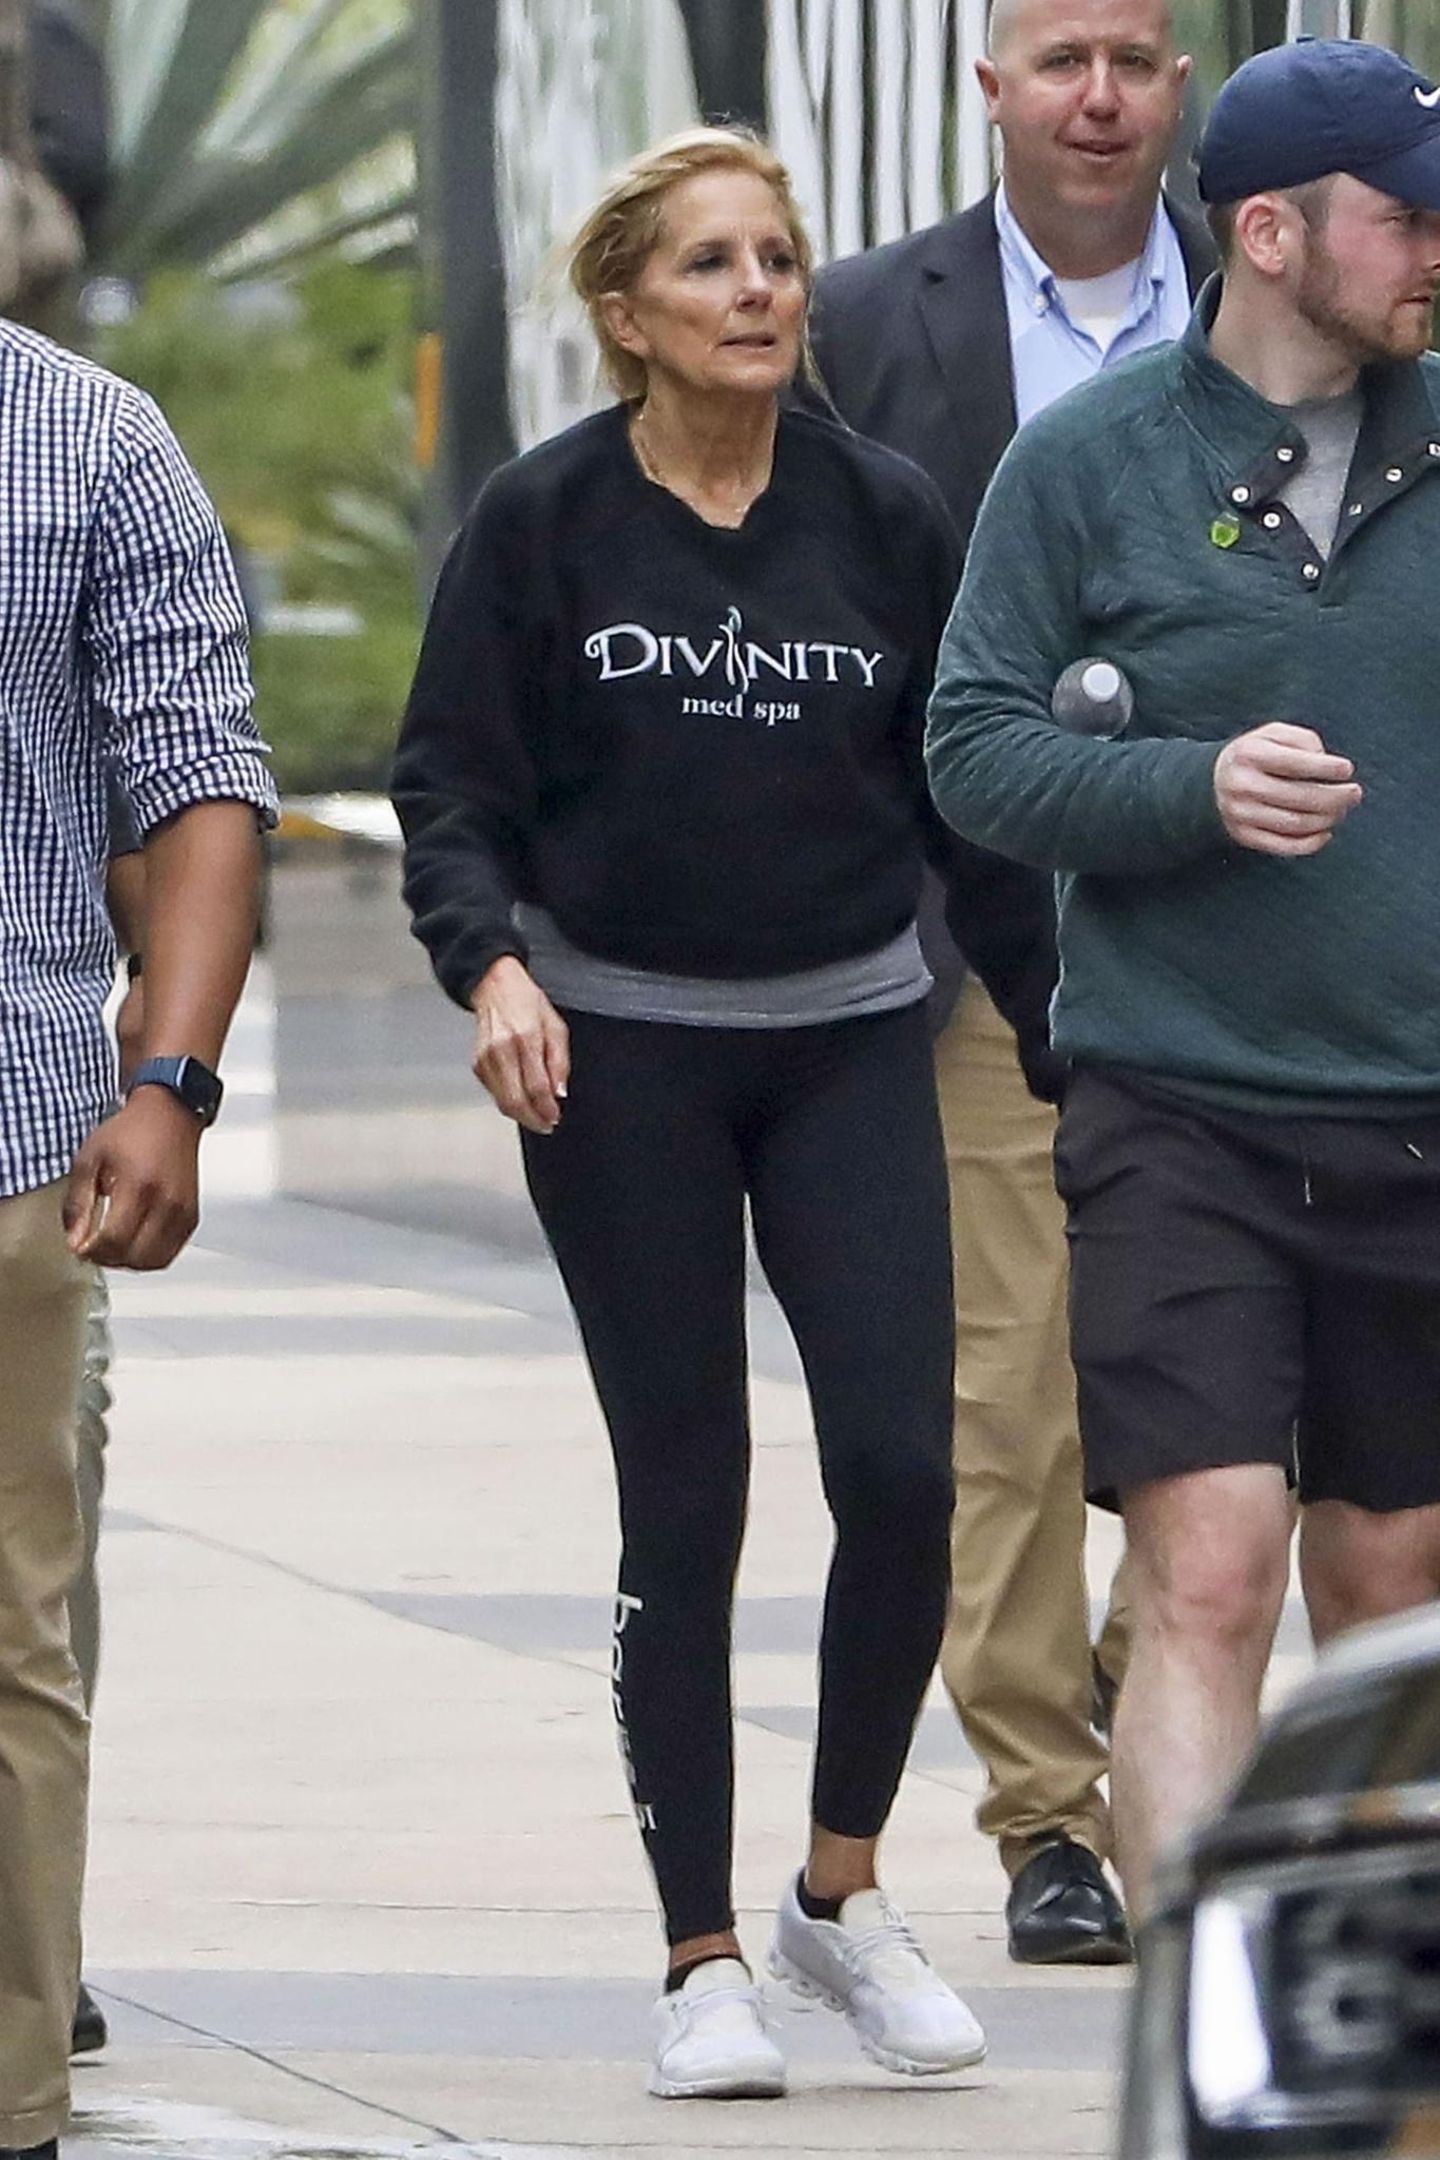 Nanu, wer hätte gedacht, dass die First Lady von Amerika, Dr. Jill Biden, auf DIE Trendsportart schlechthin setzt. In Los Angeles wird sie auf dem Weg zum "Soul Cycle"-Kurs entdeckt. Die 72-Jährige trägt dafür eine enge Leggings, ein lockeres Sweatshirt und weiße Sneaker. Sportlich, sportlich!